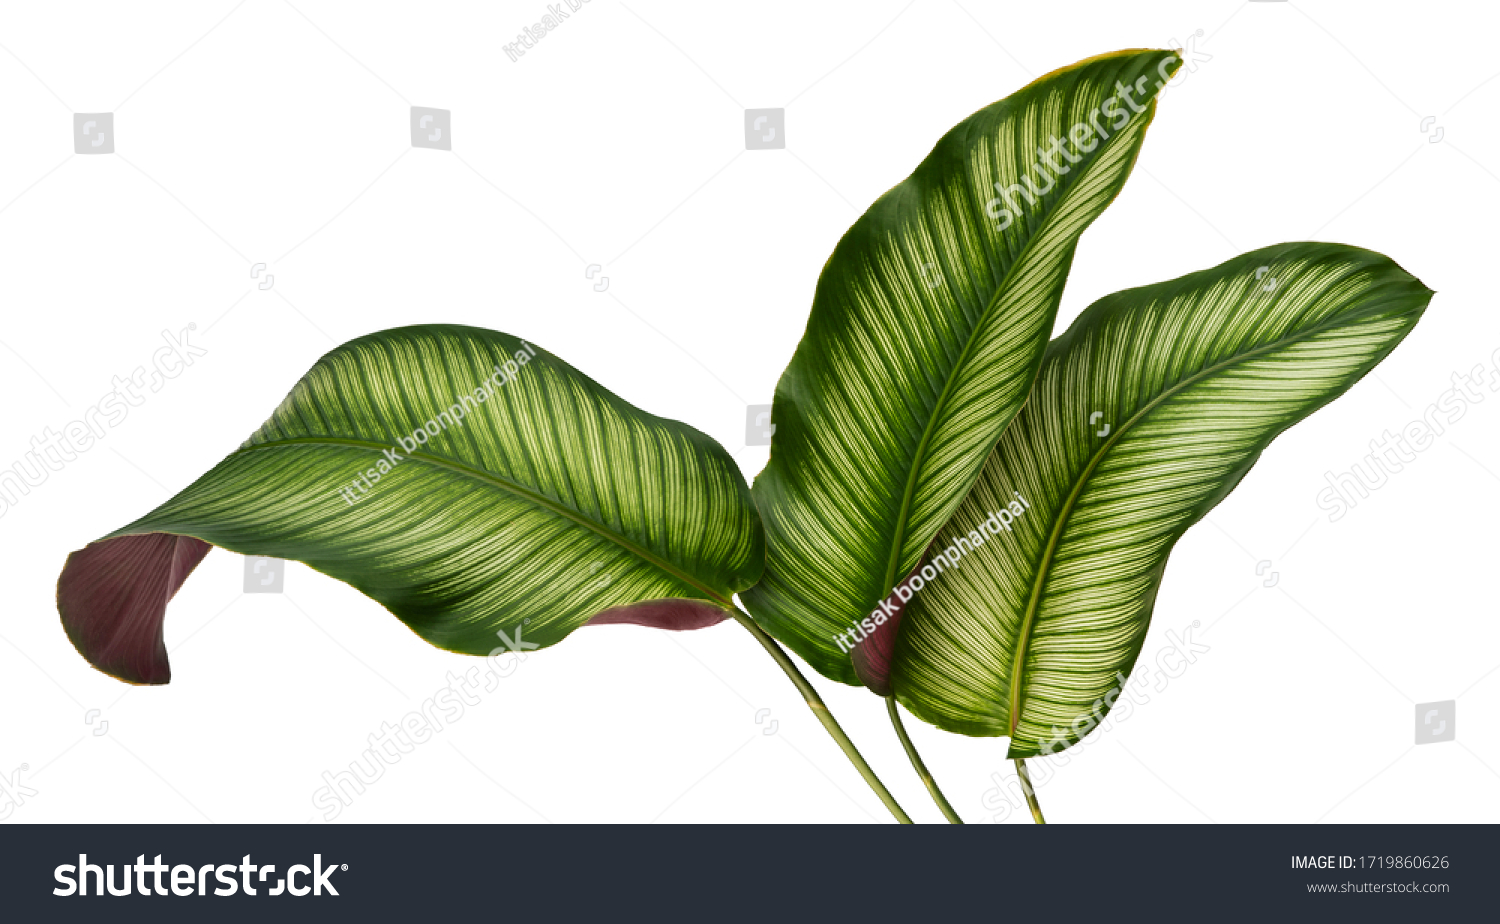 Calathea ornata leaves(Pin-stripe Calathea),Tropical foliage isolated on white background. #1719860626